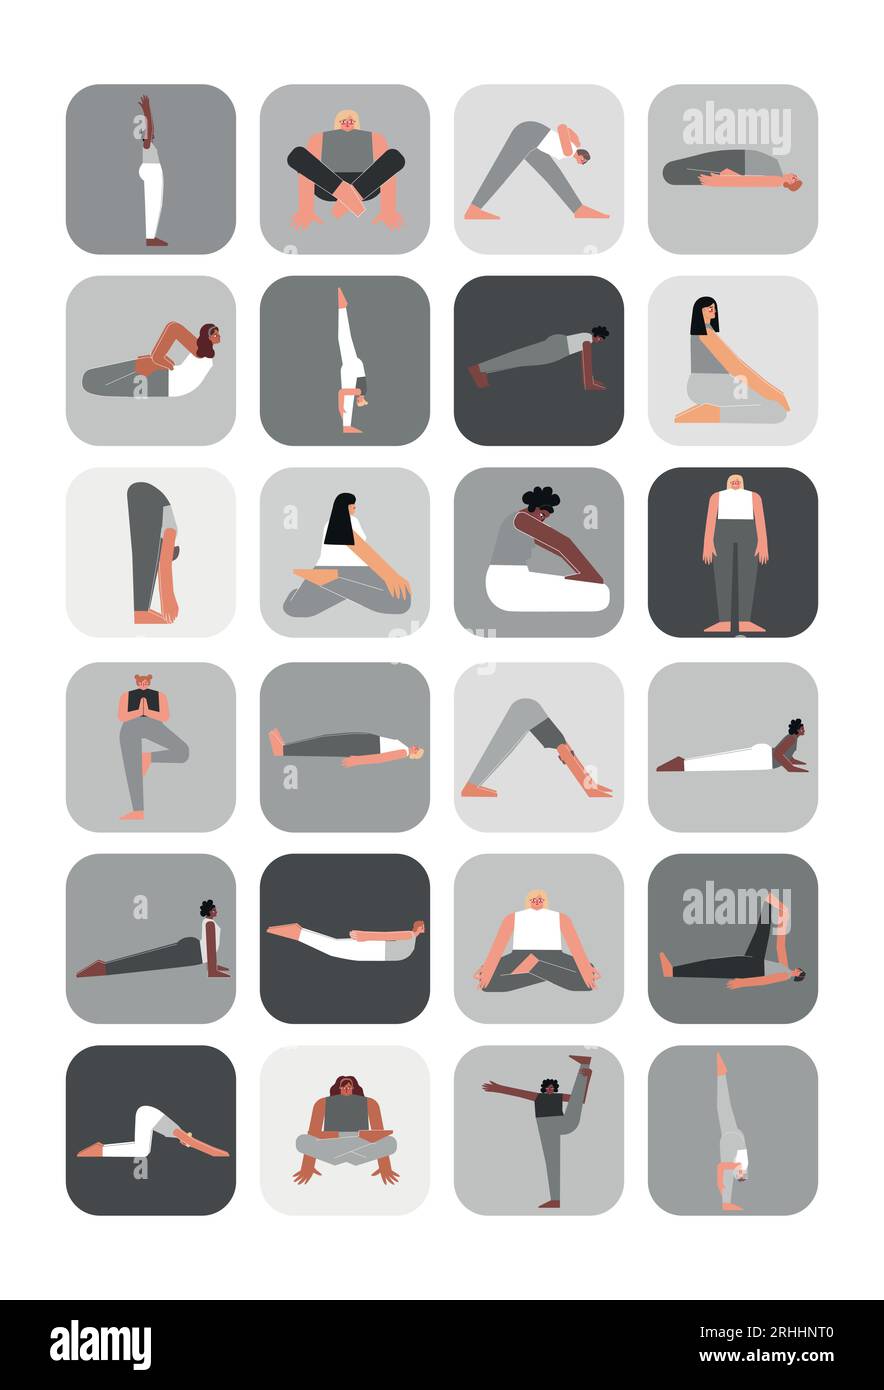 Set d'illustration vectorielle pour pack d'autocollants avec poses de yoga. Collection monochrome plate sur affiche A4 verticale avec des femmes asiatiques, africaines et caucasiennes MAK Illustration de Vecteur